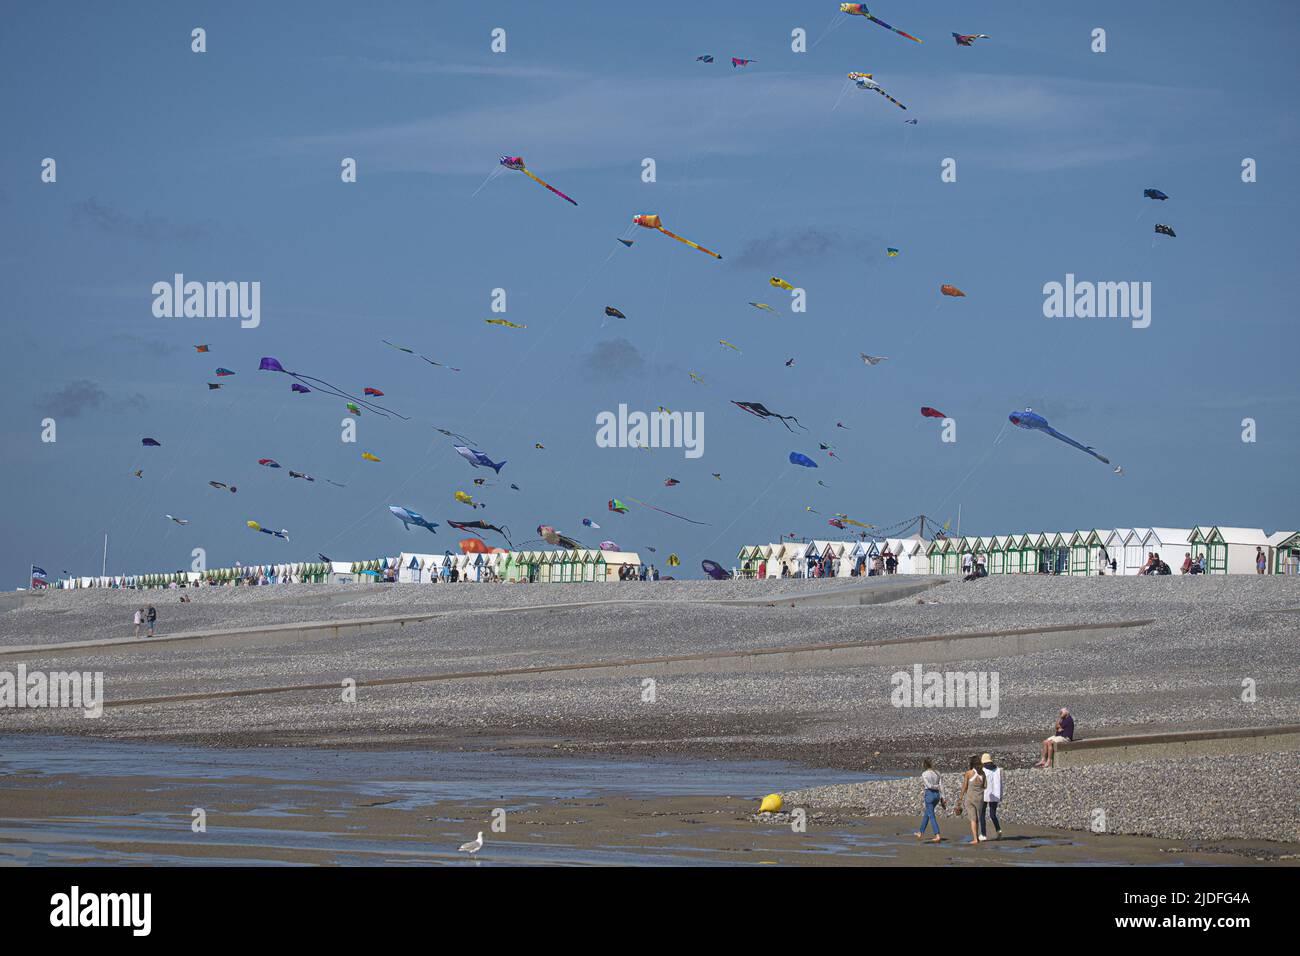 Cerf volants et festival à Cayeux sur mer, les cabines au bord de l'eau Stock Photo